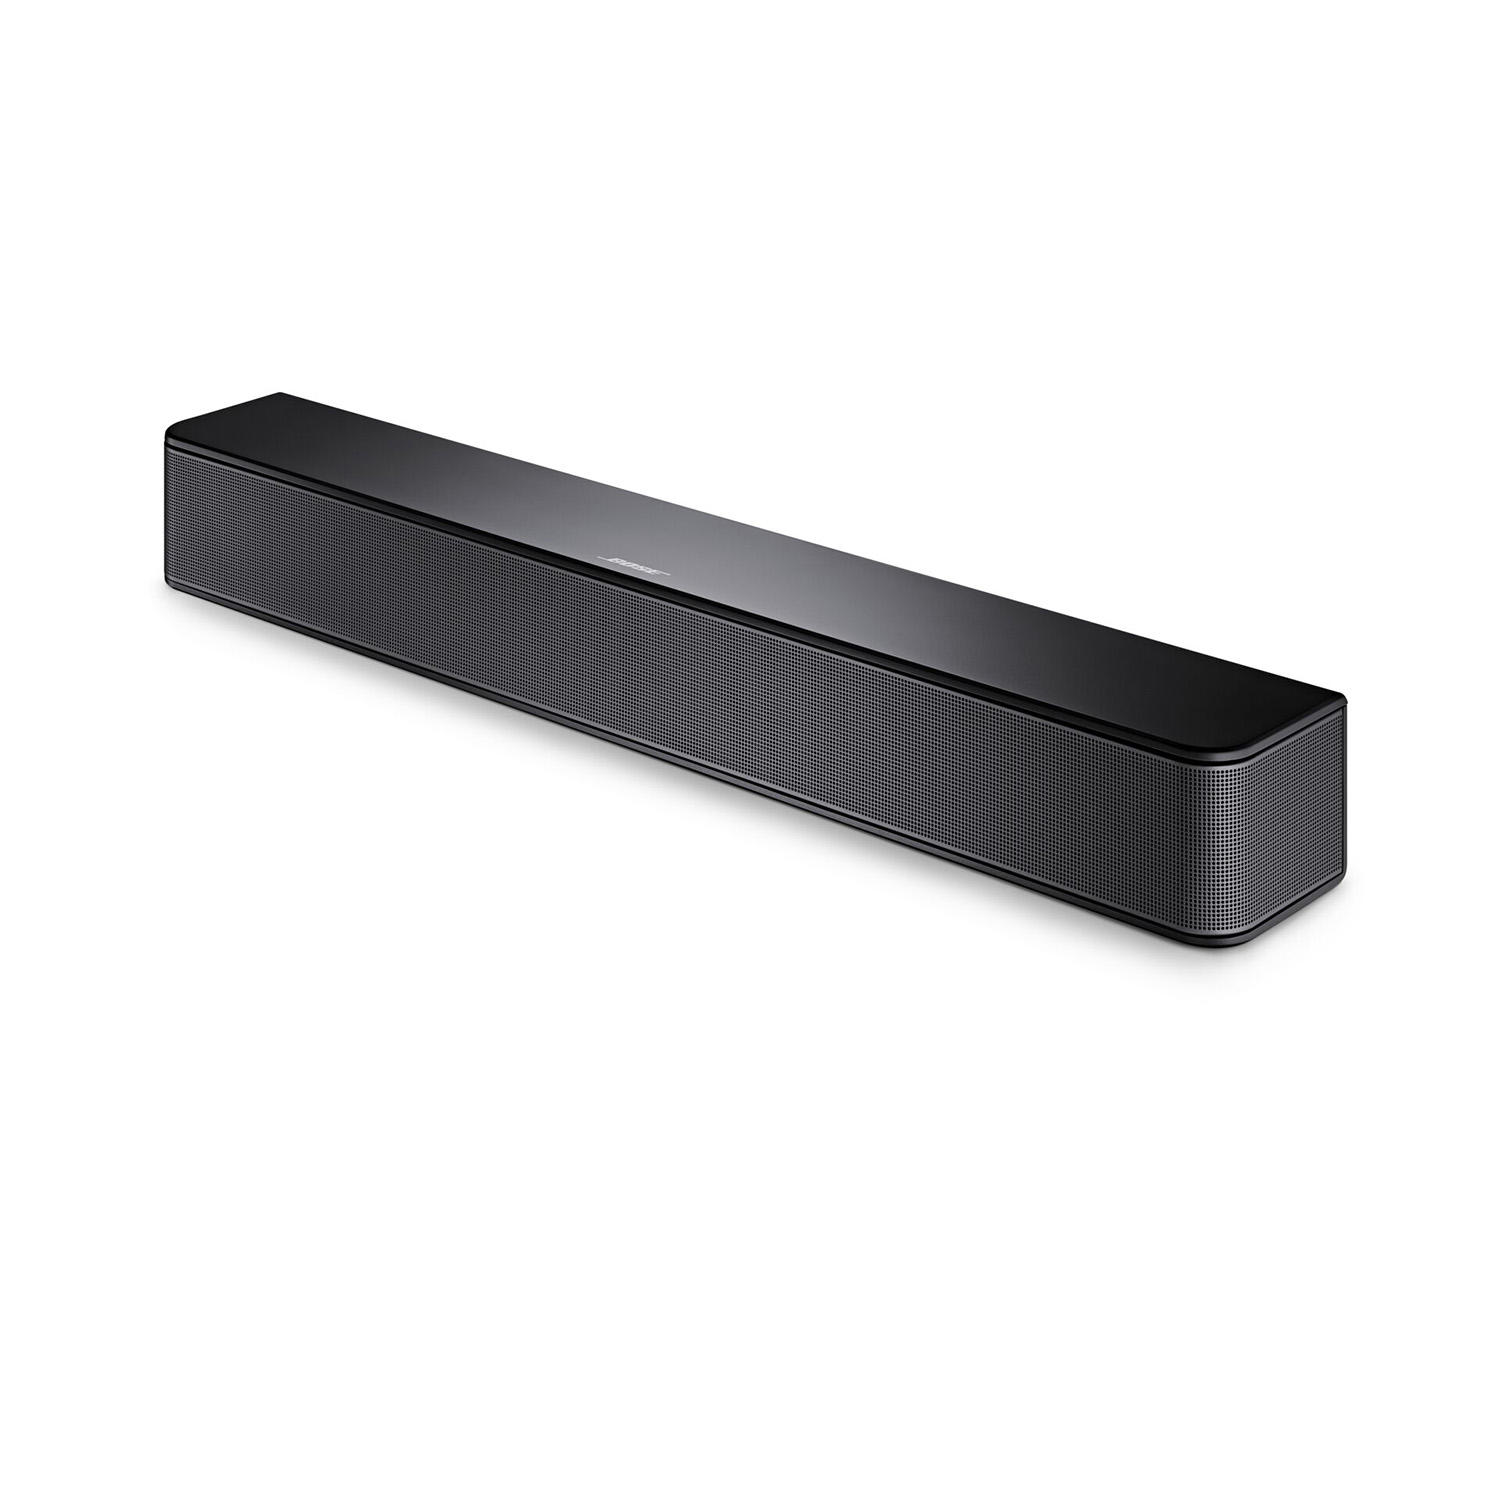 Refurb Bose Solo Soundbar Series II 21.6" Bluetooth Sound Bar